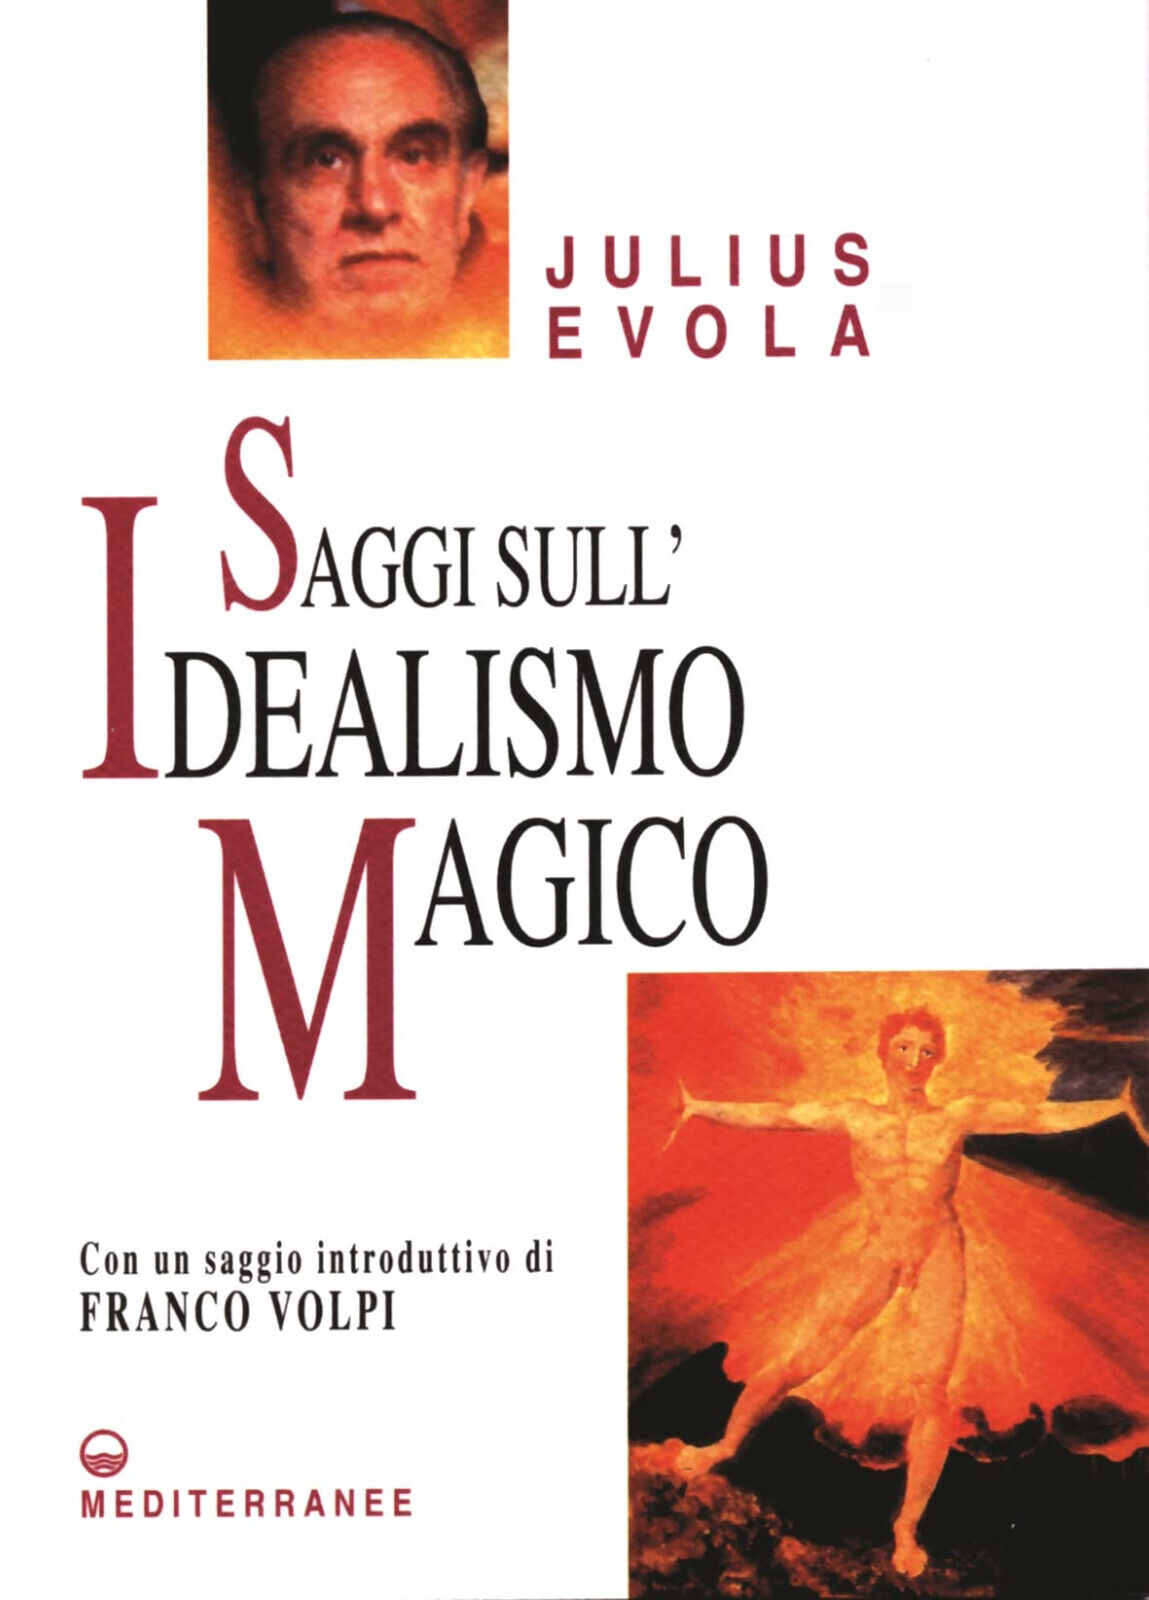 Saggi sull idealismo magico - Julius Evola - Edizioni Mediterranee, 2005